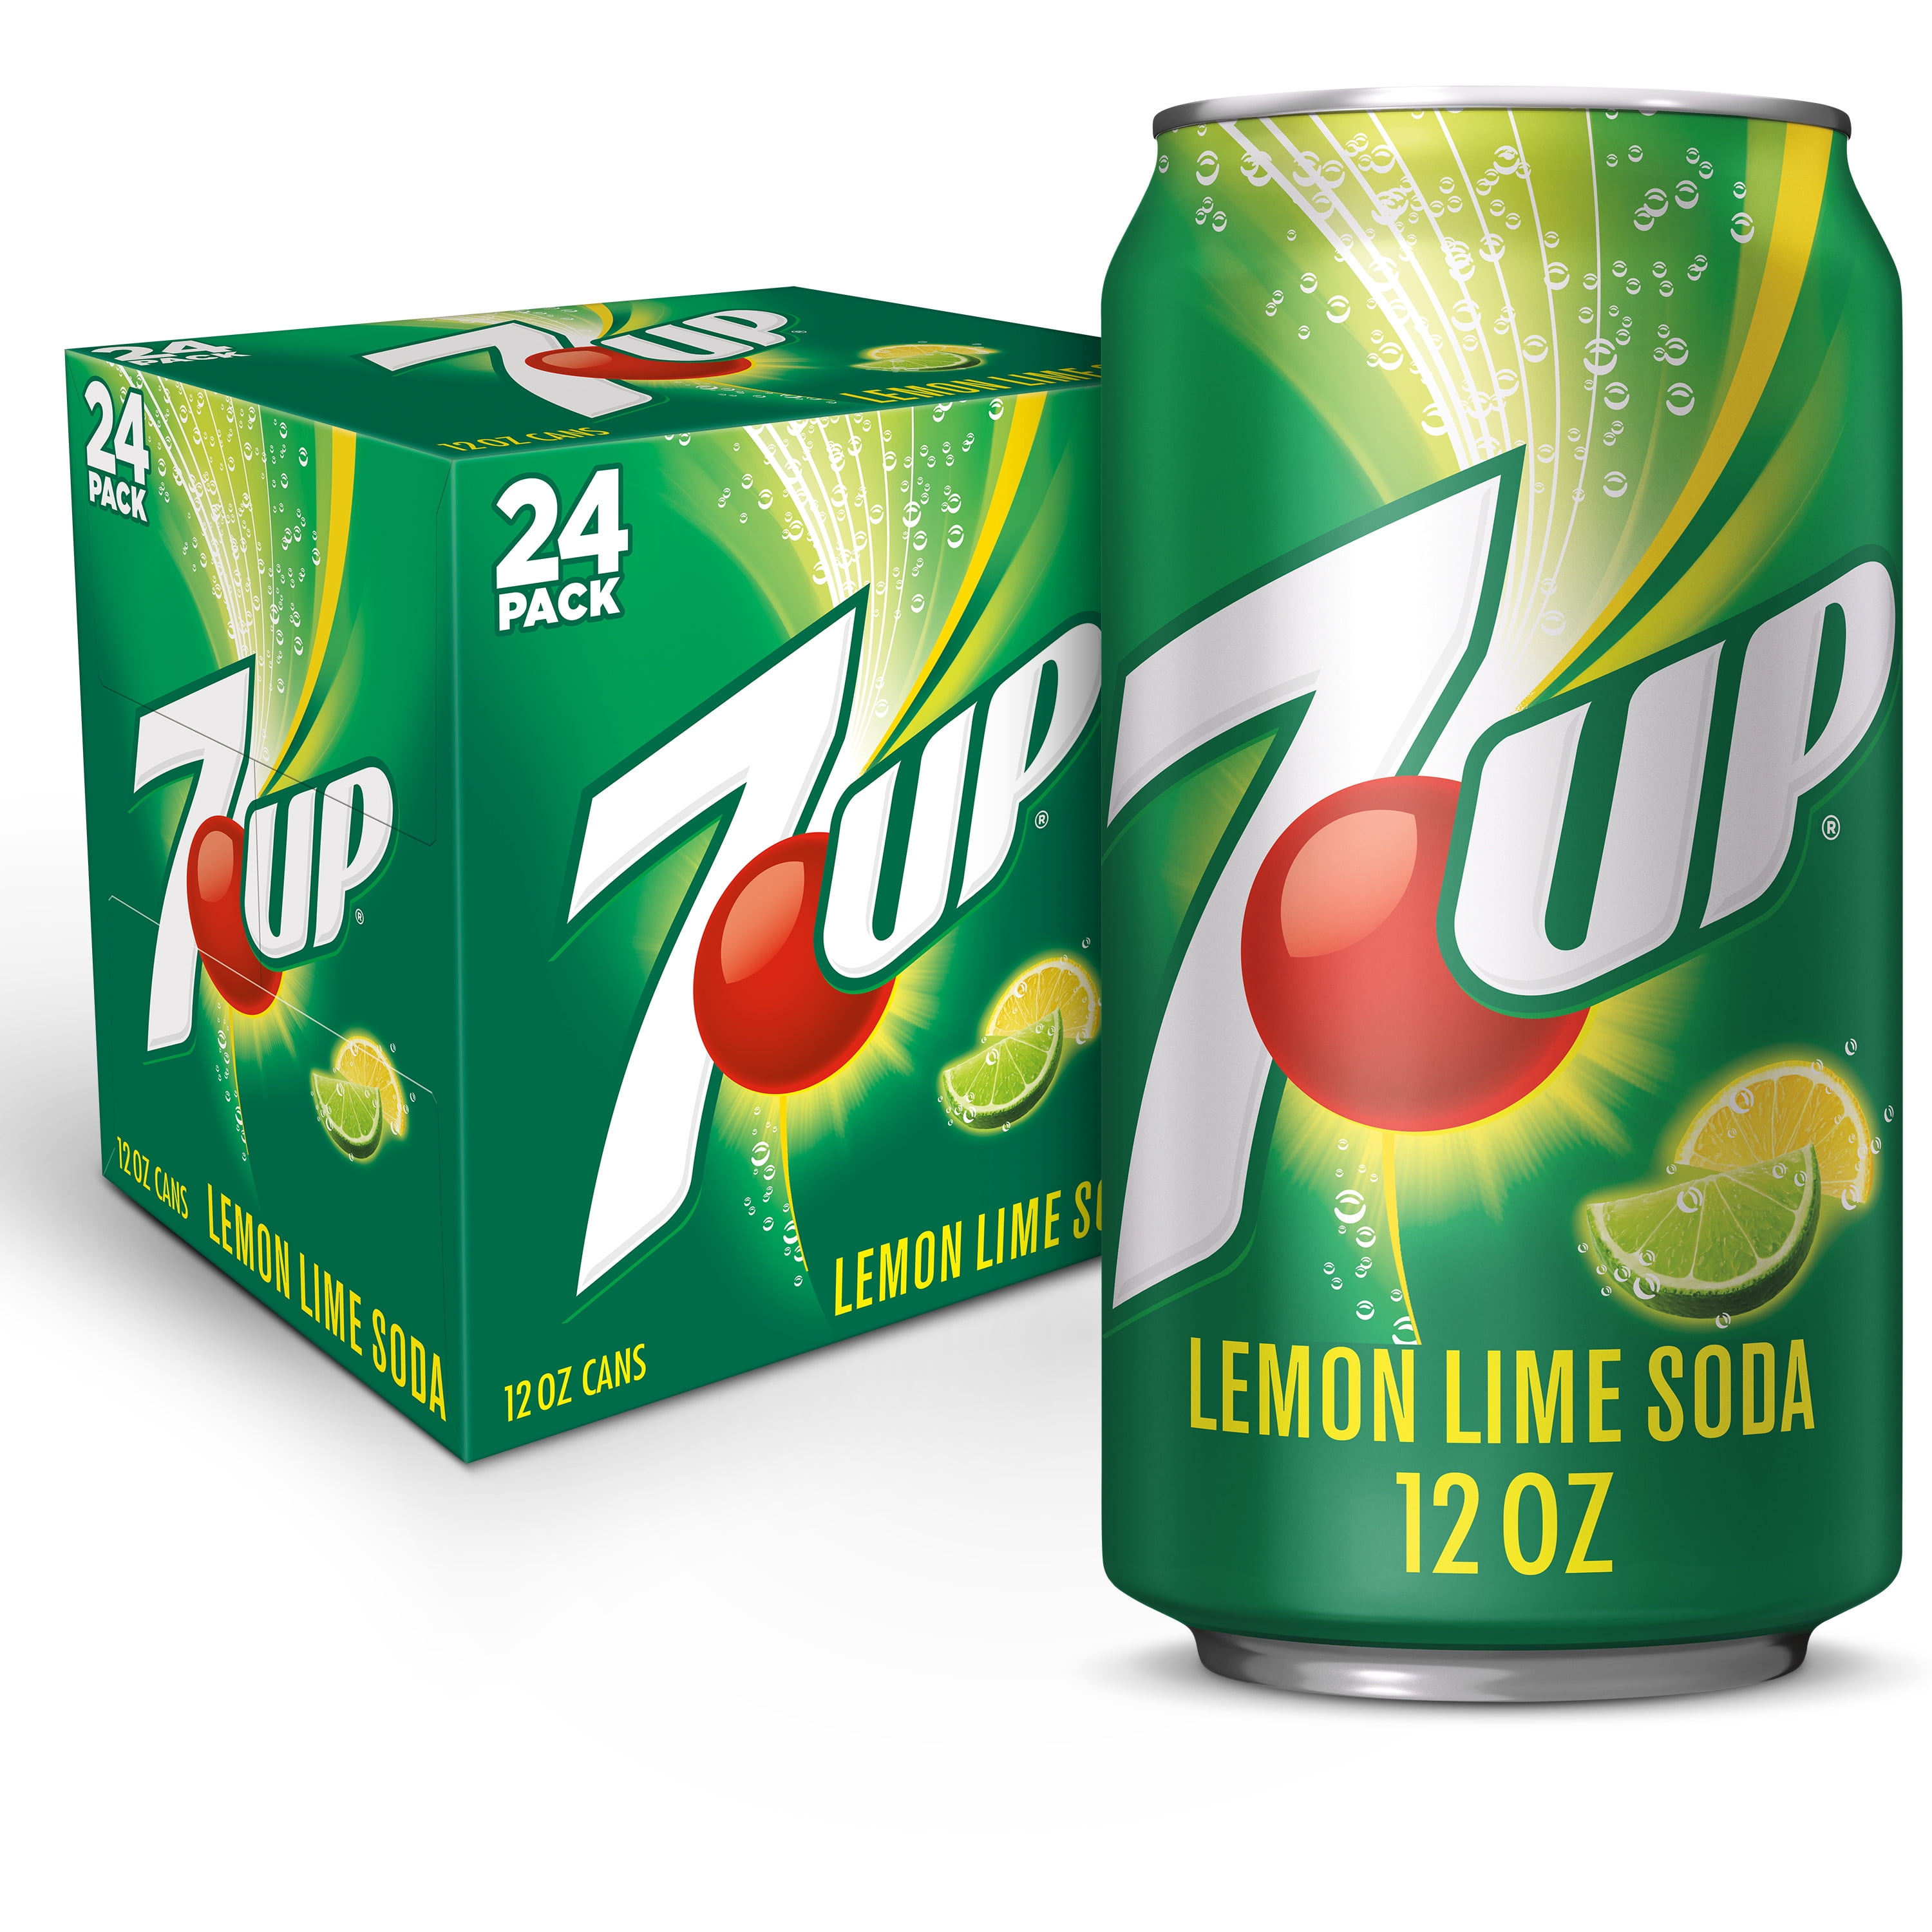 7UP Lemon Lime Soda, canettes de 12 fl oz, pack de Maroc